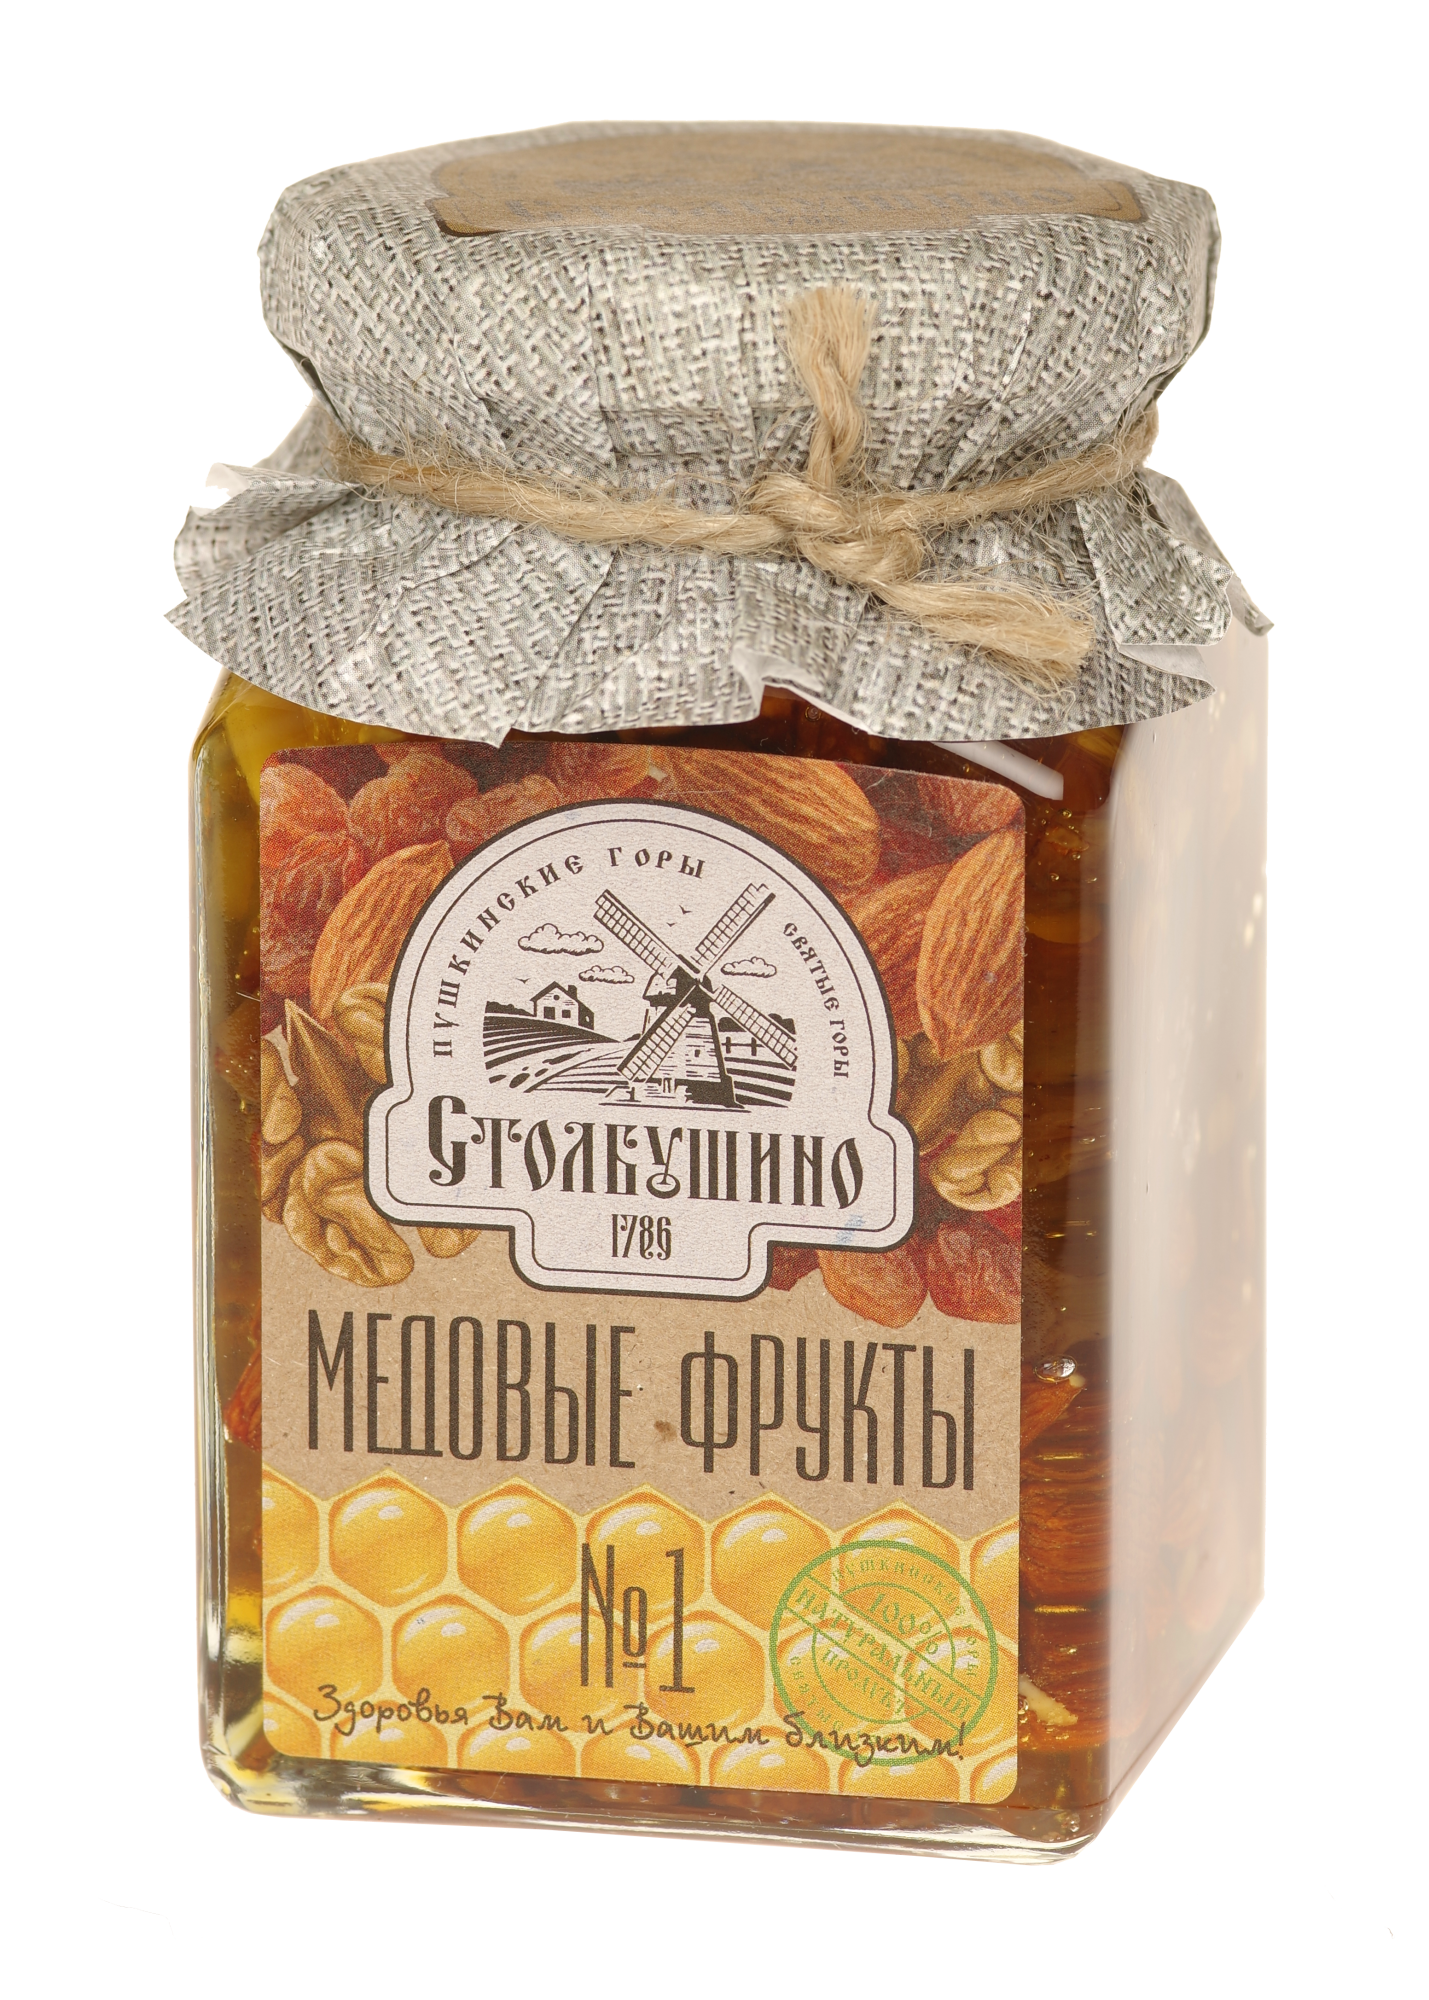 Honigfrucht. Getrocknete Früchte und Nüsse in Honig "Stolbushinsky" (Honig, Walnüsse, Sultaninen, Mandeln) №1